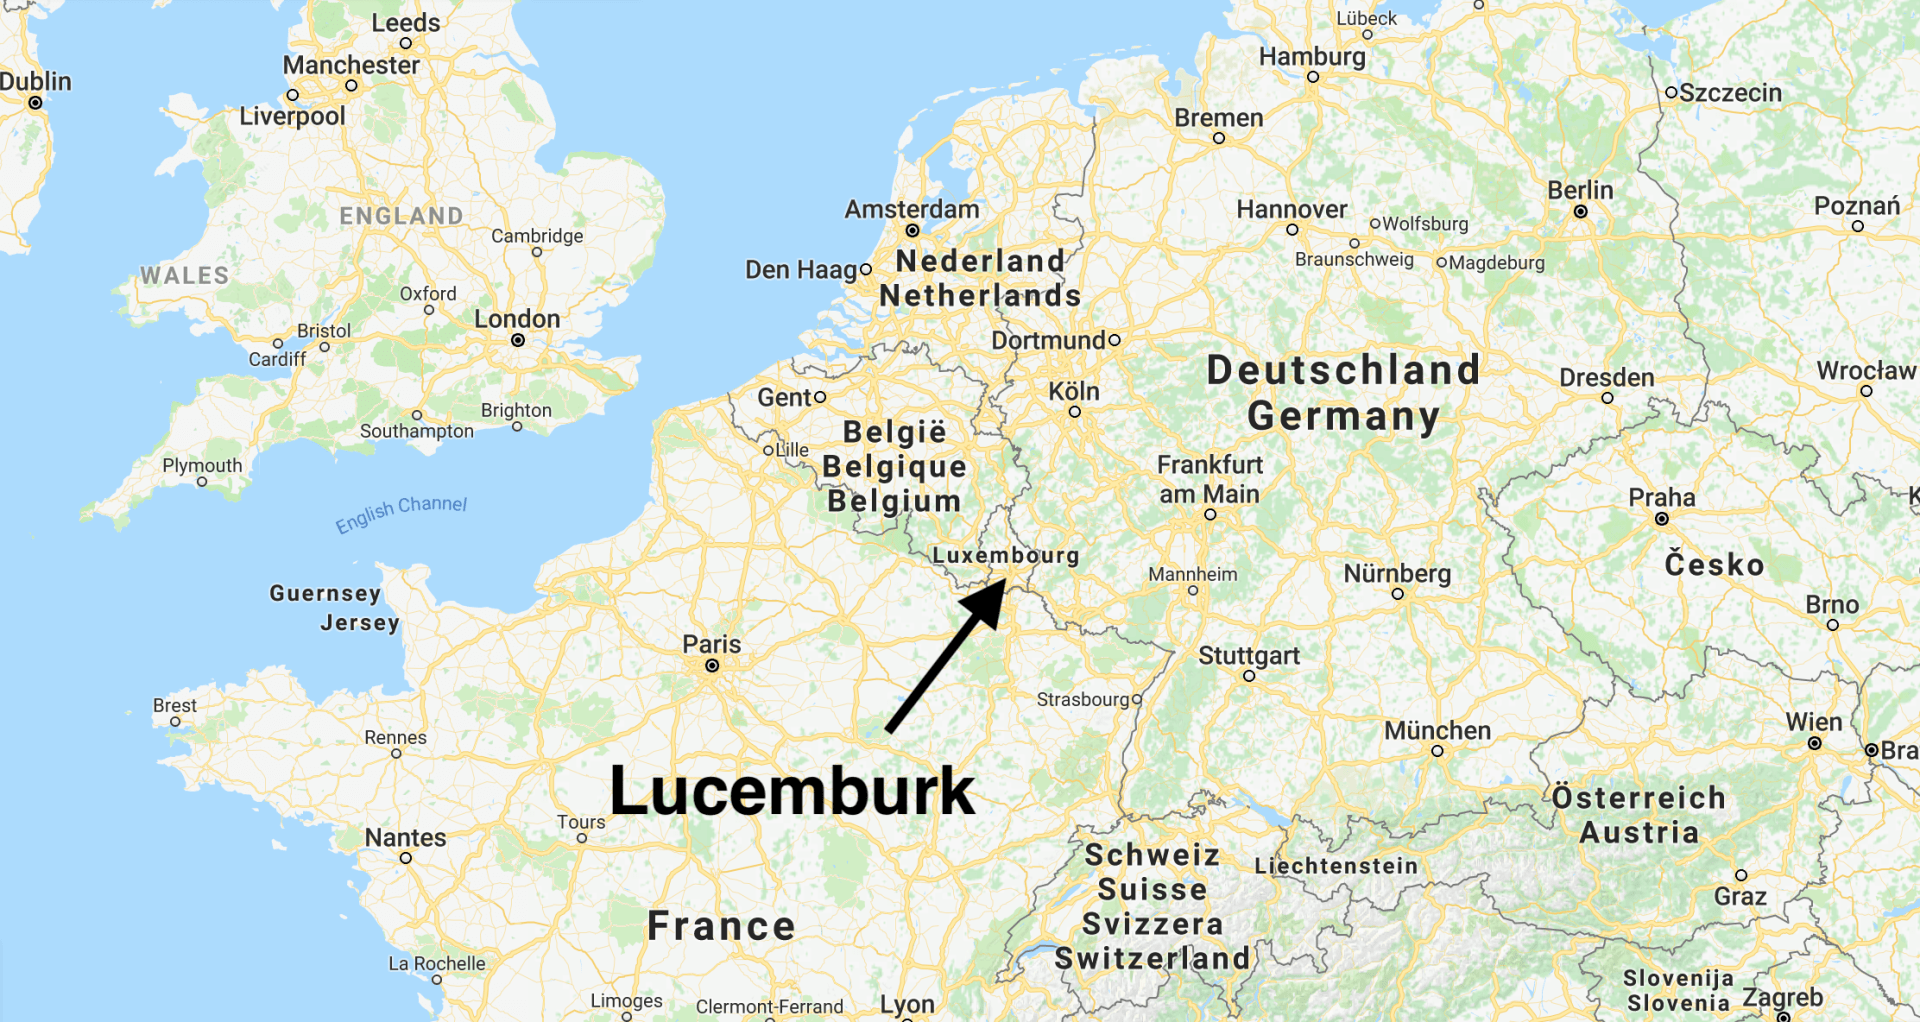 Lucemburk